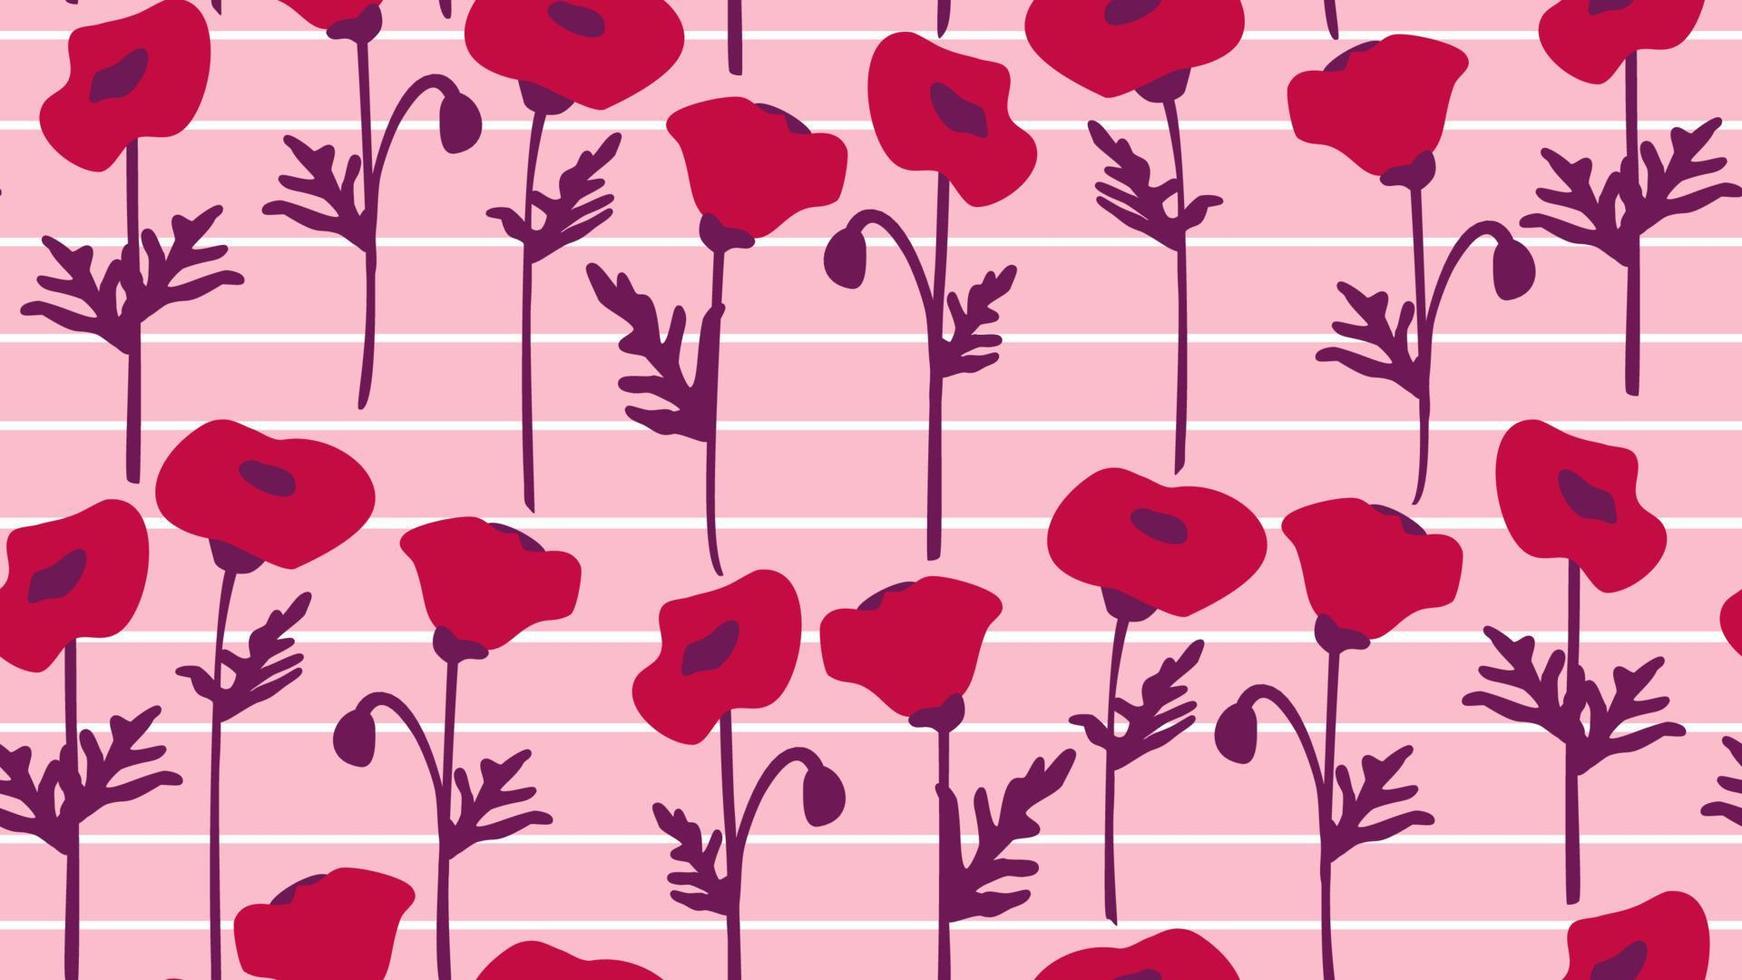 süß Hand gezeichnet Magenta Mohn Blumen auf gestreift Weiß und Rosa Hintergrund abstrakt nahtlos Vektor Muster Illustration